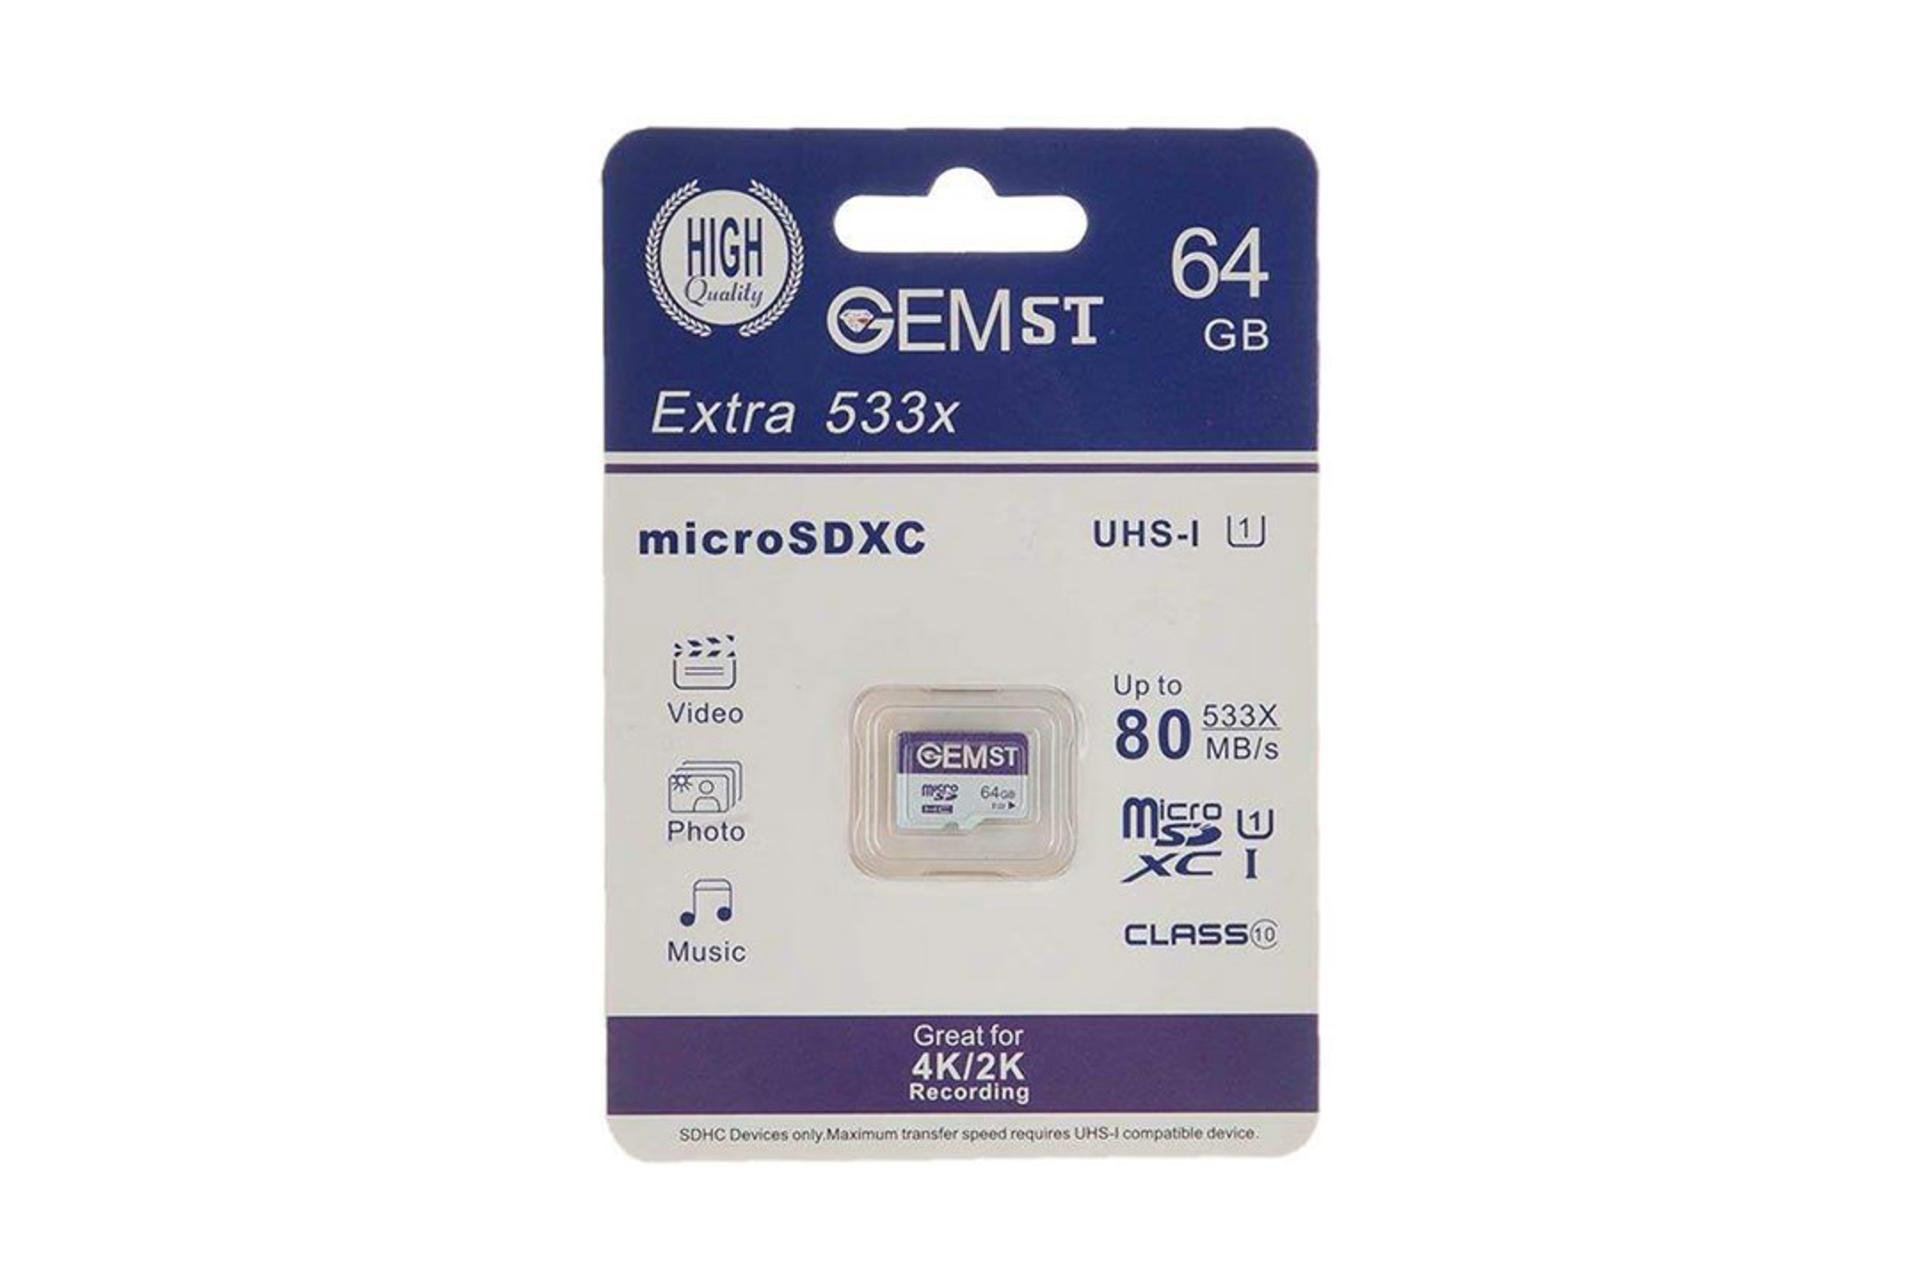 Gem ST Extra 533X microSDXC Class 10 UHS-I U1 64GB